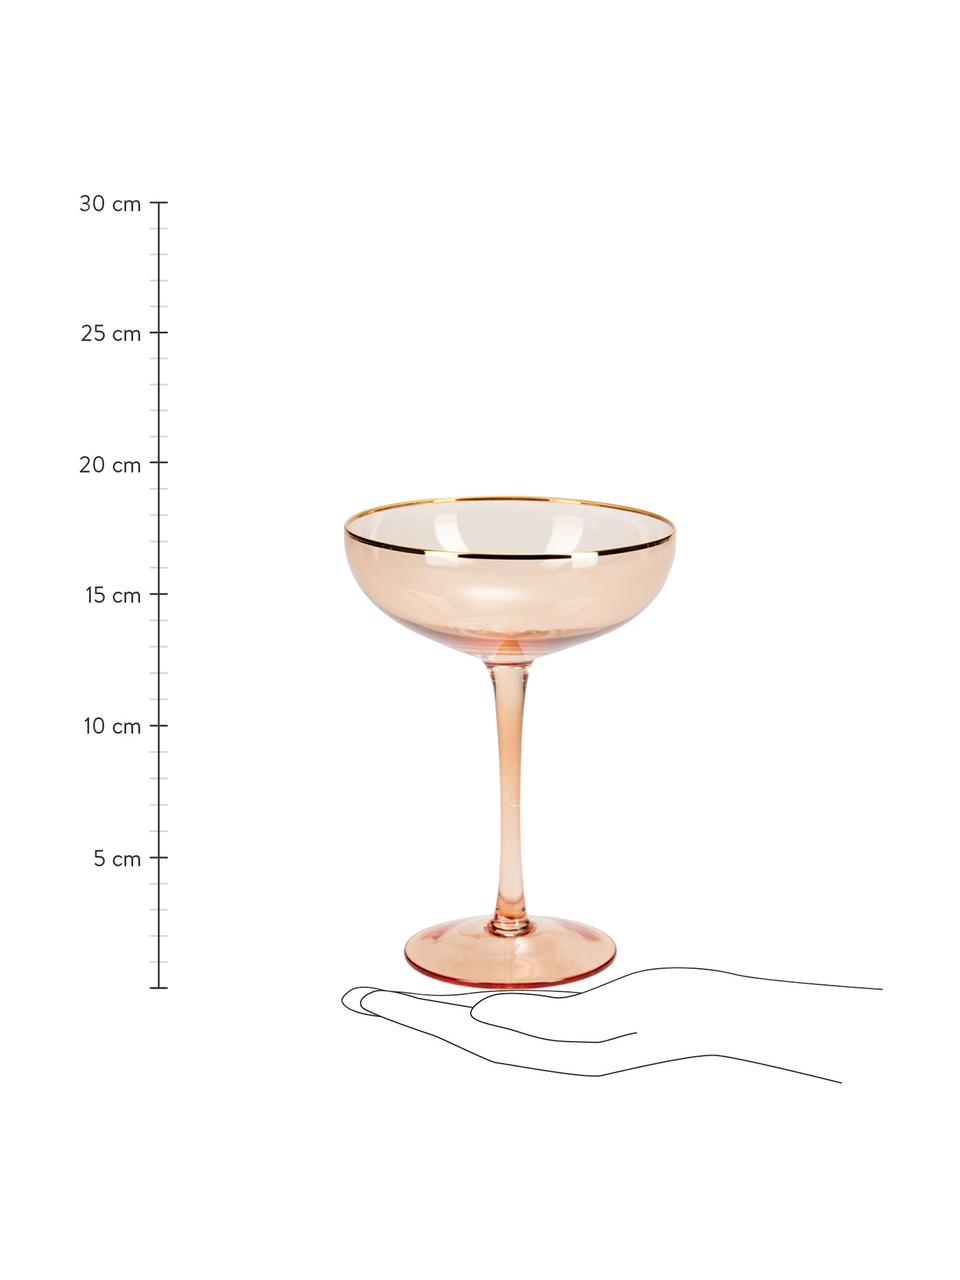 Champagnerschalen Goldie mit Goldrand, 6 Stück, Glas, Rosa, Goldfarben, Ø 12 x H 17 cm, 250 ml